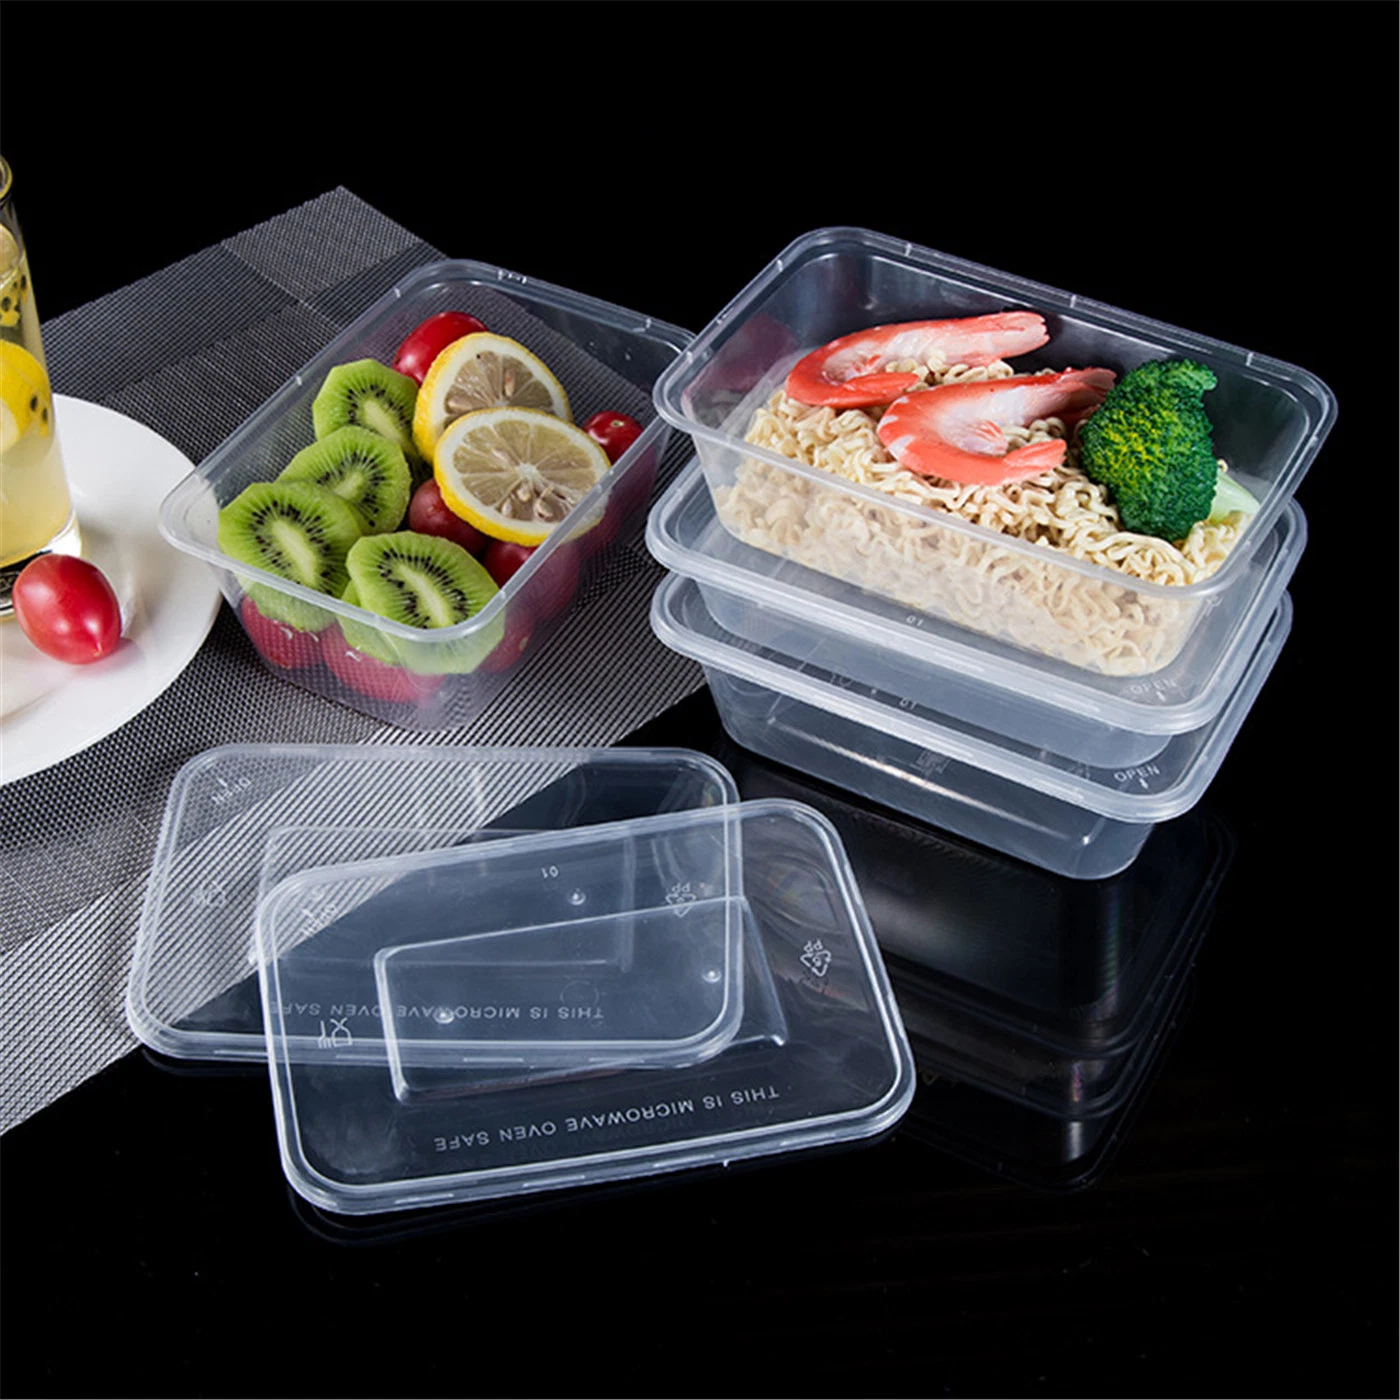 32 أوز. حاويات الطعام المسبق للوجبة المستديرة قابلة لإعادة الاستخدام مع غطاء بلاستيكي يمكن التخلص منه بعد الاستخدام لتخزين الطعام حاويات وجبات الطعام قبل التحضير خالية من مادة BPA ميكونو